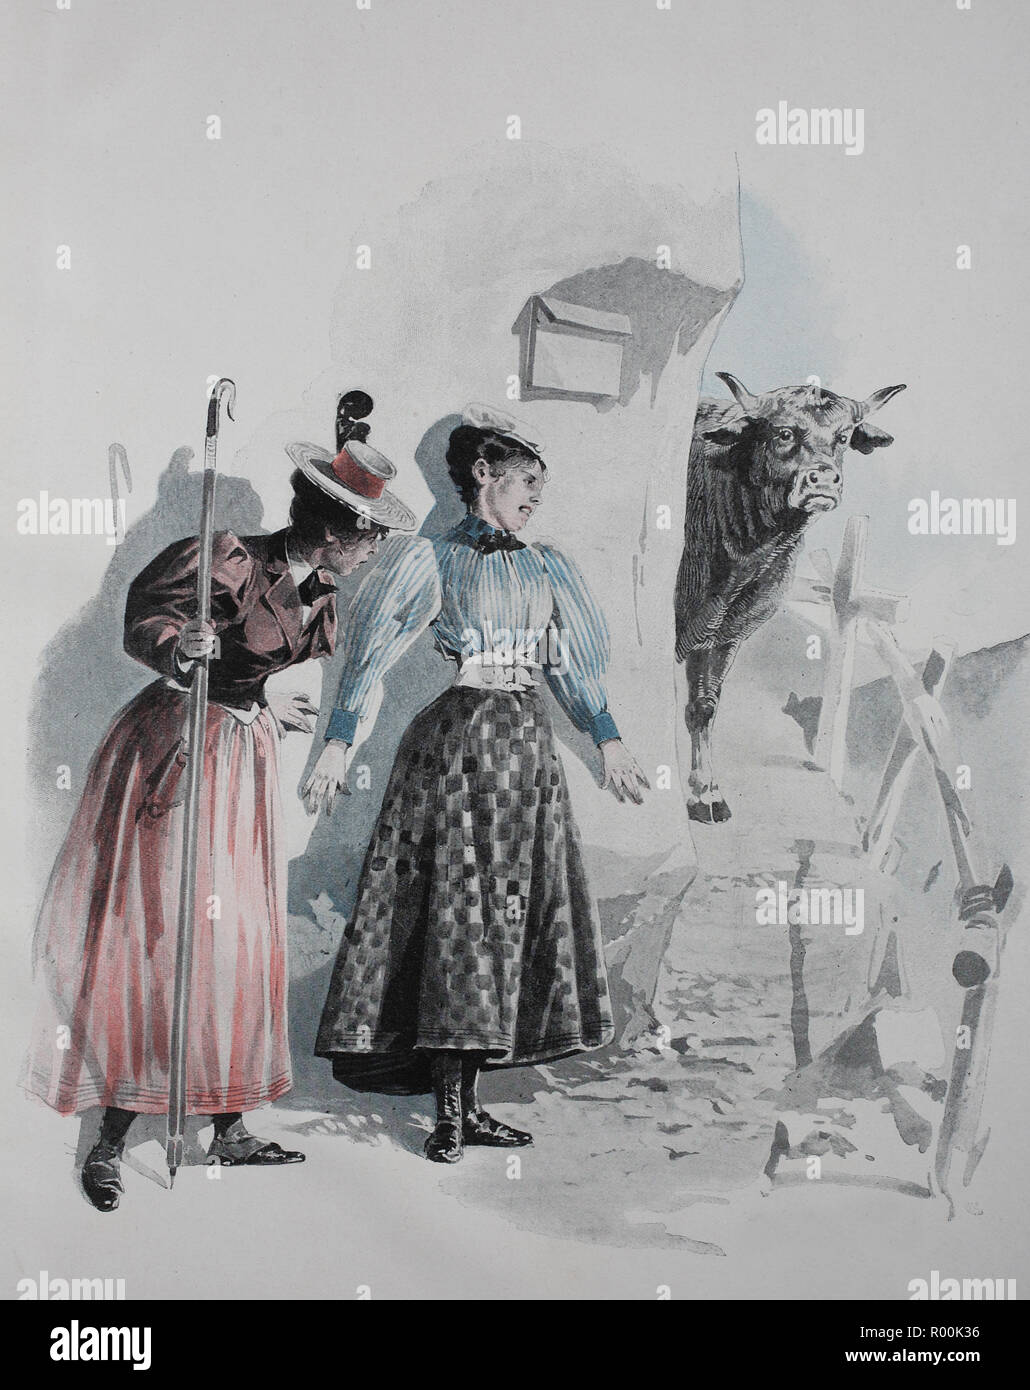 Digital verbesserte Reproduktion, zwei Wanderer nicht mithalten kann, weil eine Kuh die Möglichkeit, Blöcke, Österreich, original Drucken aus dem Jahr 1899 Stockfoto